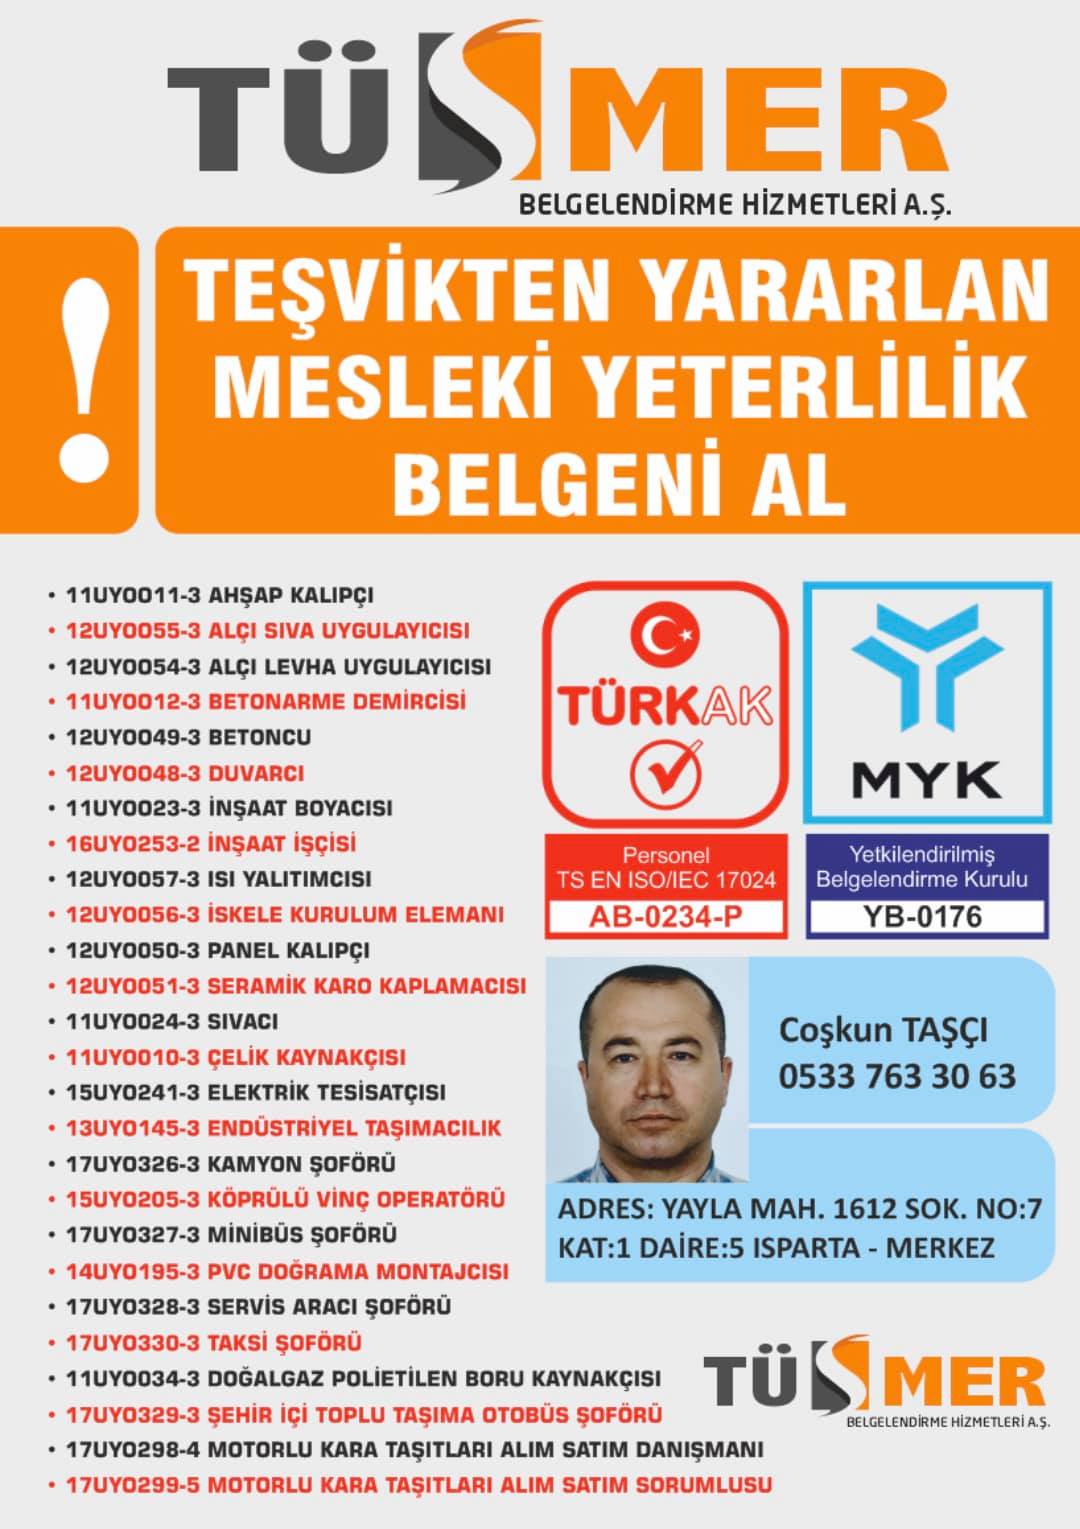 MYK MESLEKİ YETERLİLİK BELGESİ Haraççı İstanbul